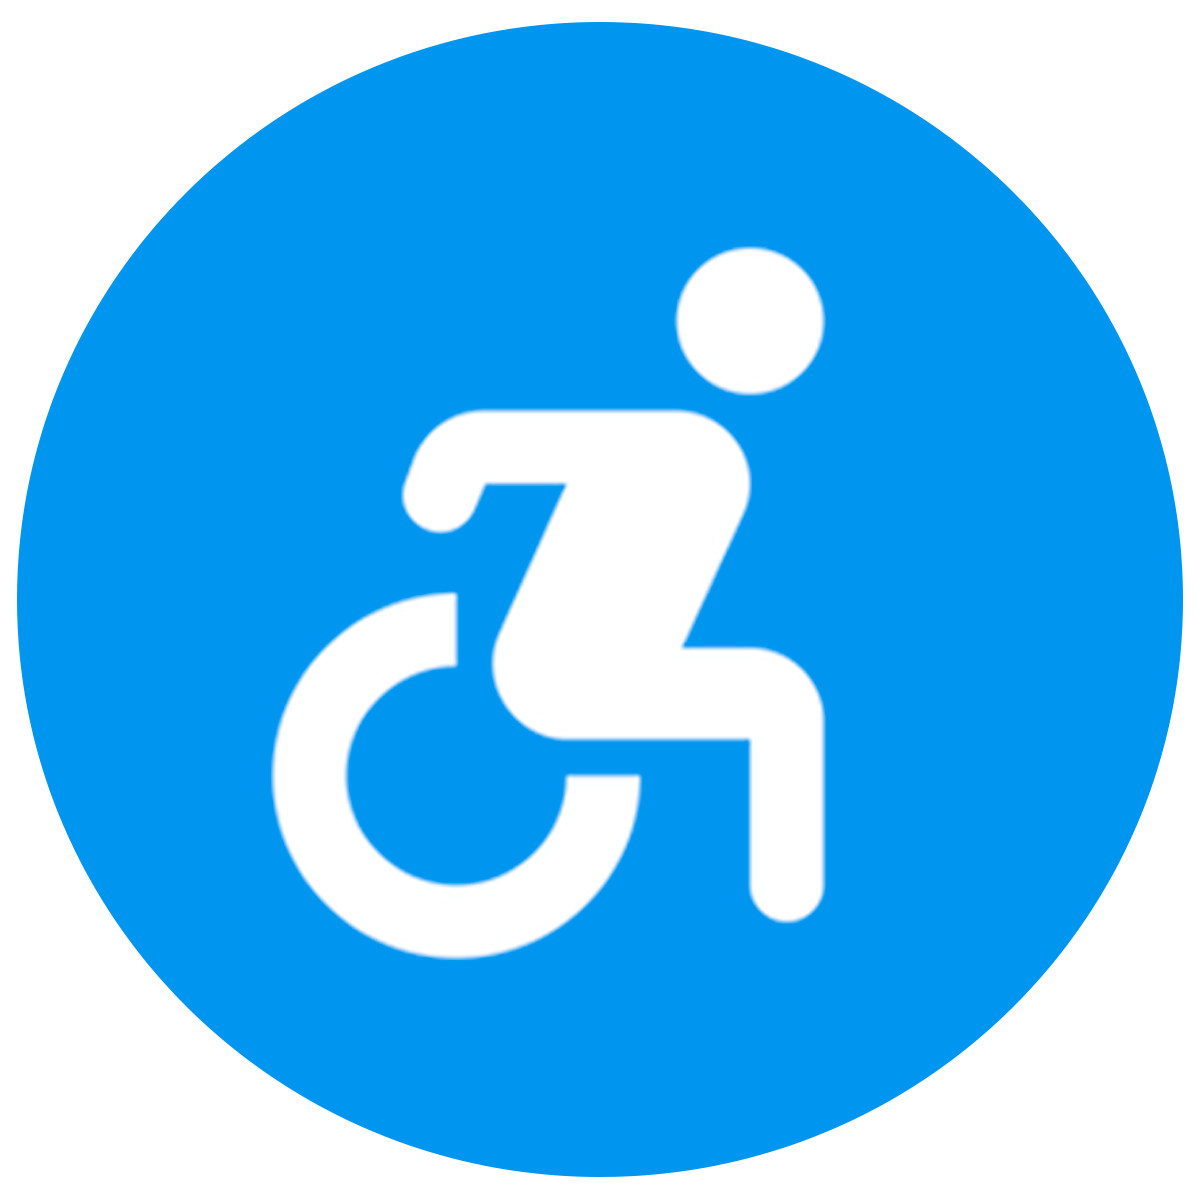 Accessibility ‑ ADA & WCAG